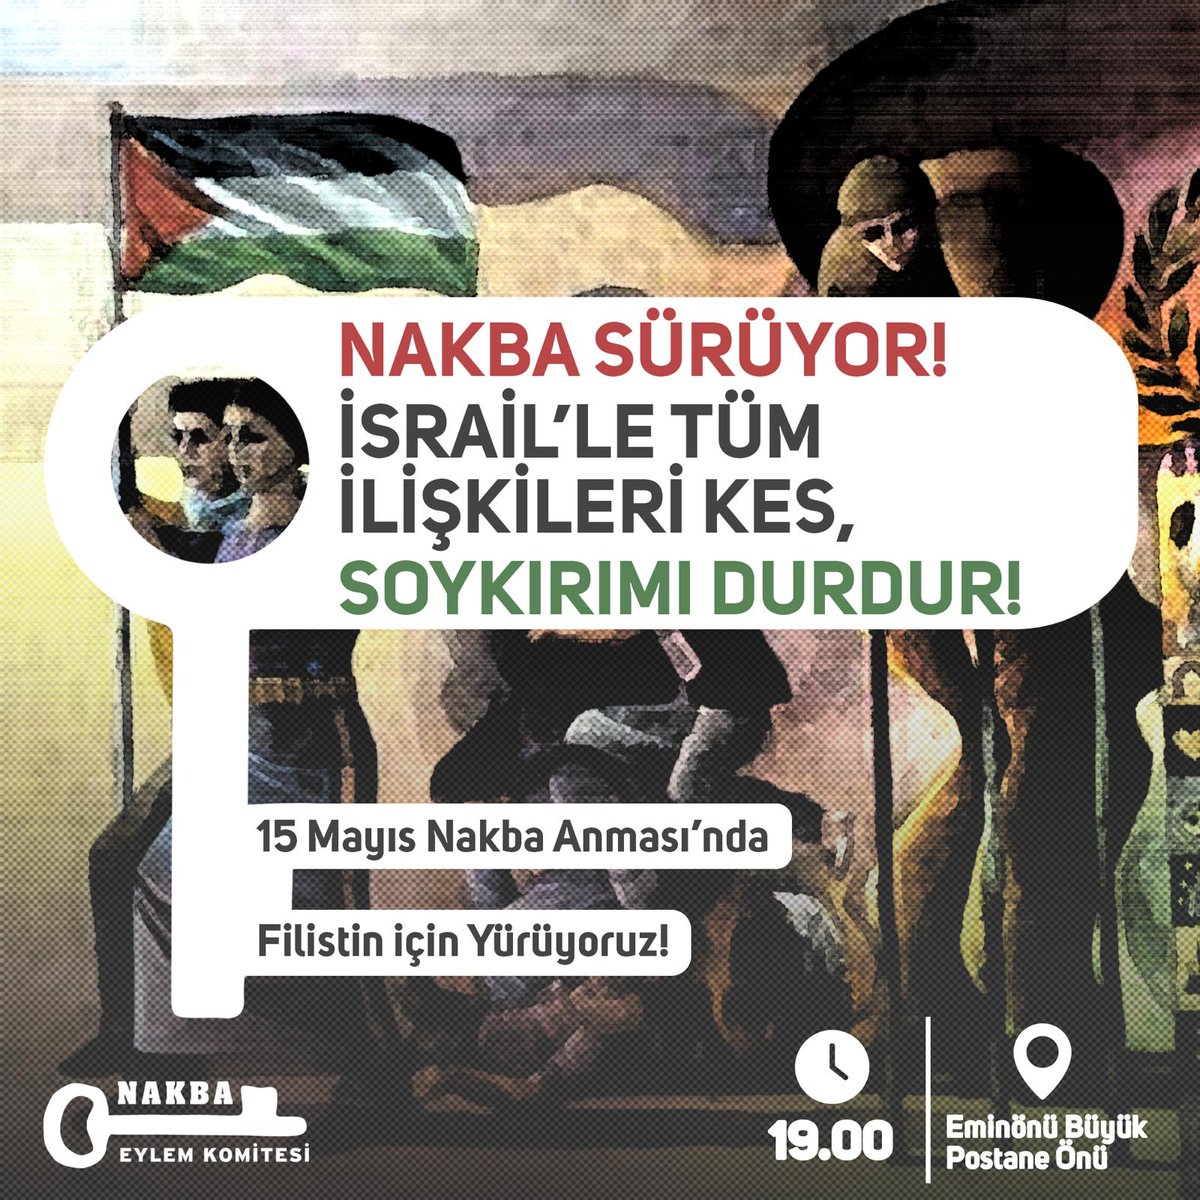 📣Eylem Çağrısı/ İstanbul NAKBA sürüyor! 15 Mayıs Nakba Anması'nda Filistin için yürüyoruz. İsrail'le tüm ilişkiler kesilsin! 🕖19:00 📍Eminönü Büyük Postane Önü 🗓 15 Mayıs Çarşamba #İsrailleTümİlişkileriKes #SoykırımıDurdur